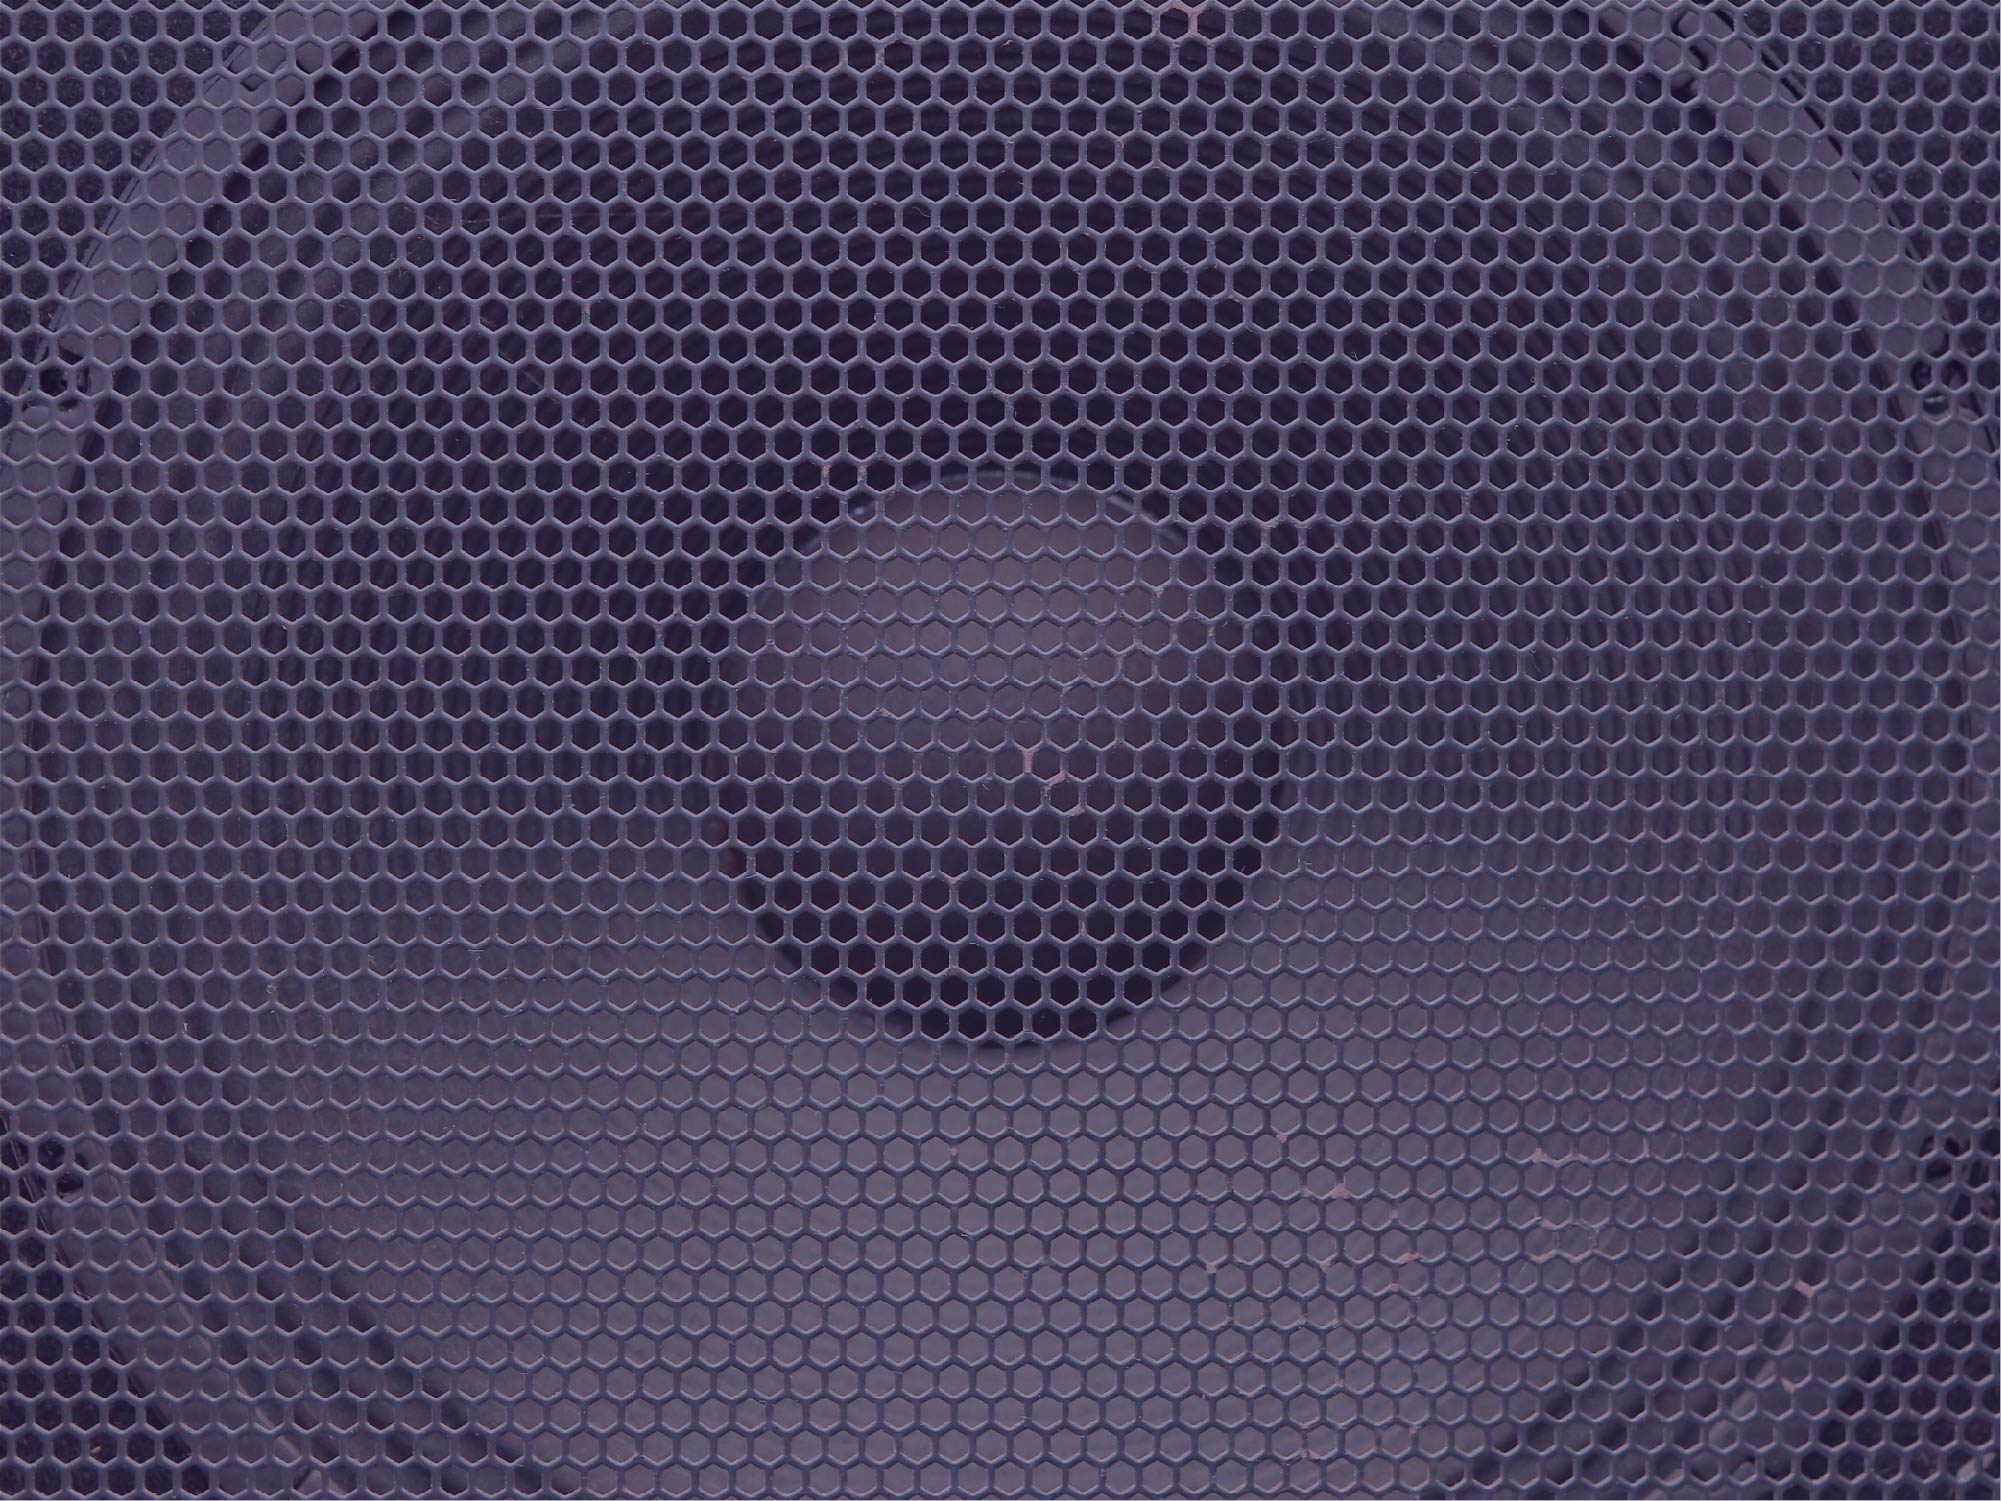 Audio speaker image